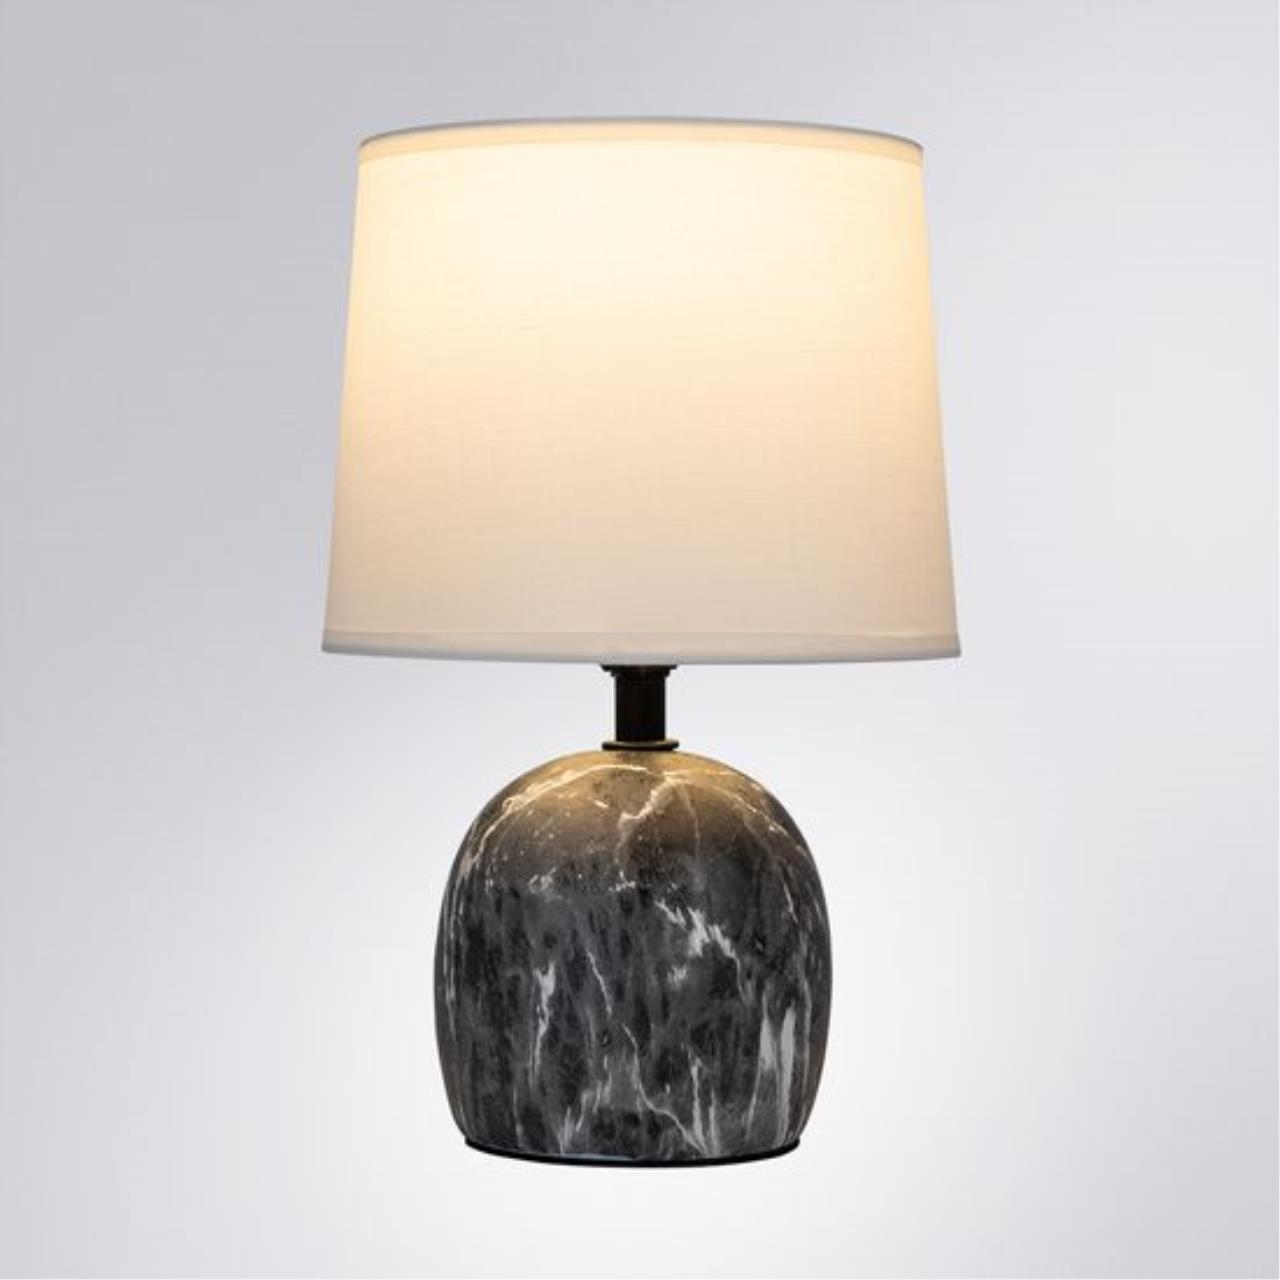 Интерьерная настольная лампа Arte lamp A5022LT-1GY